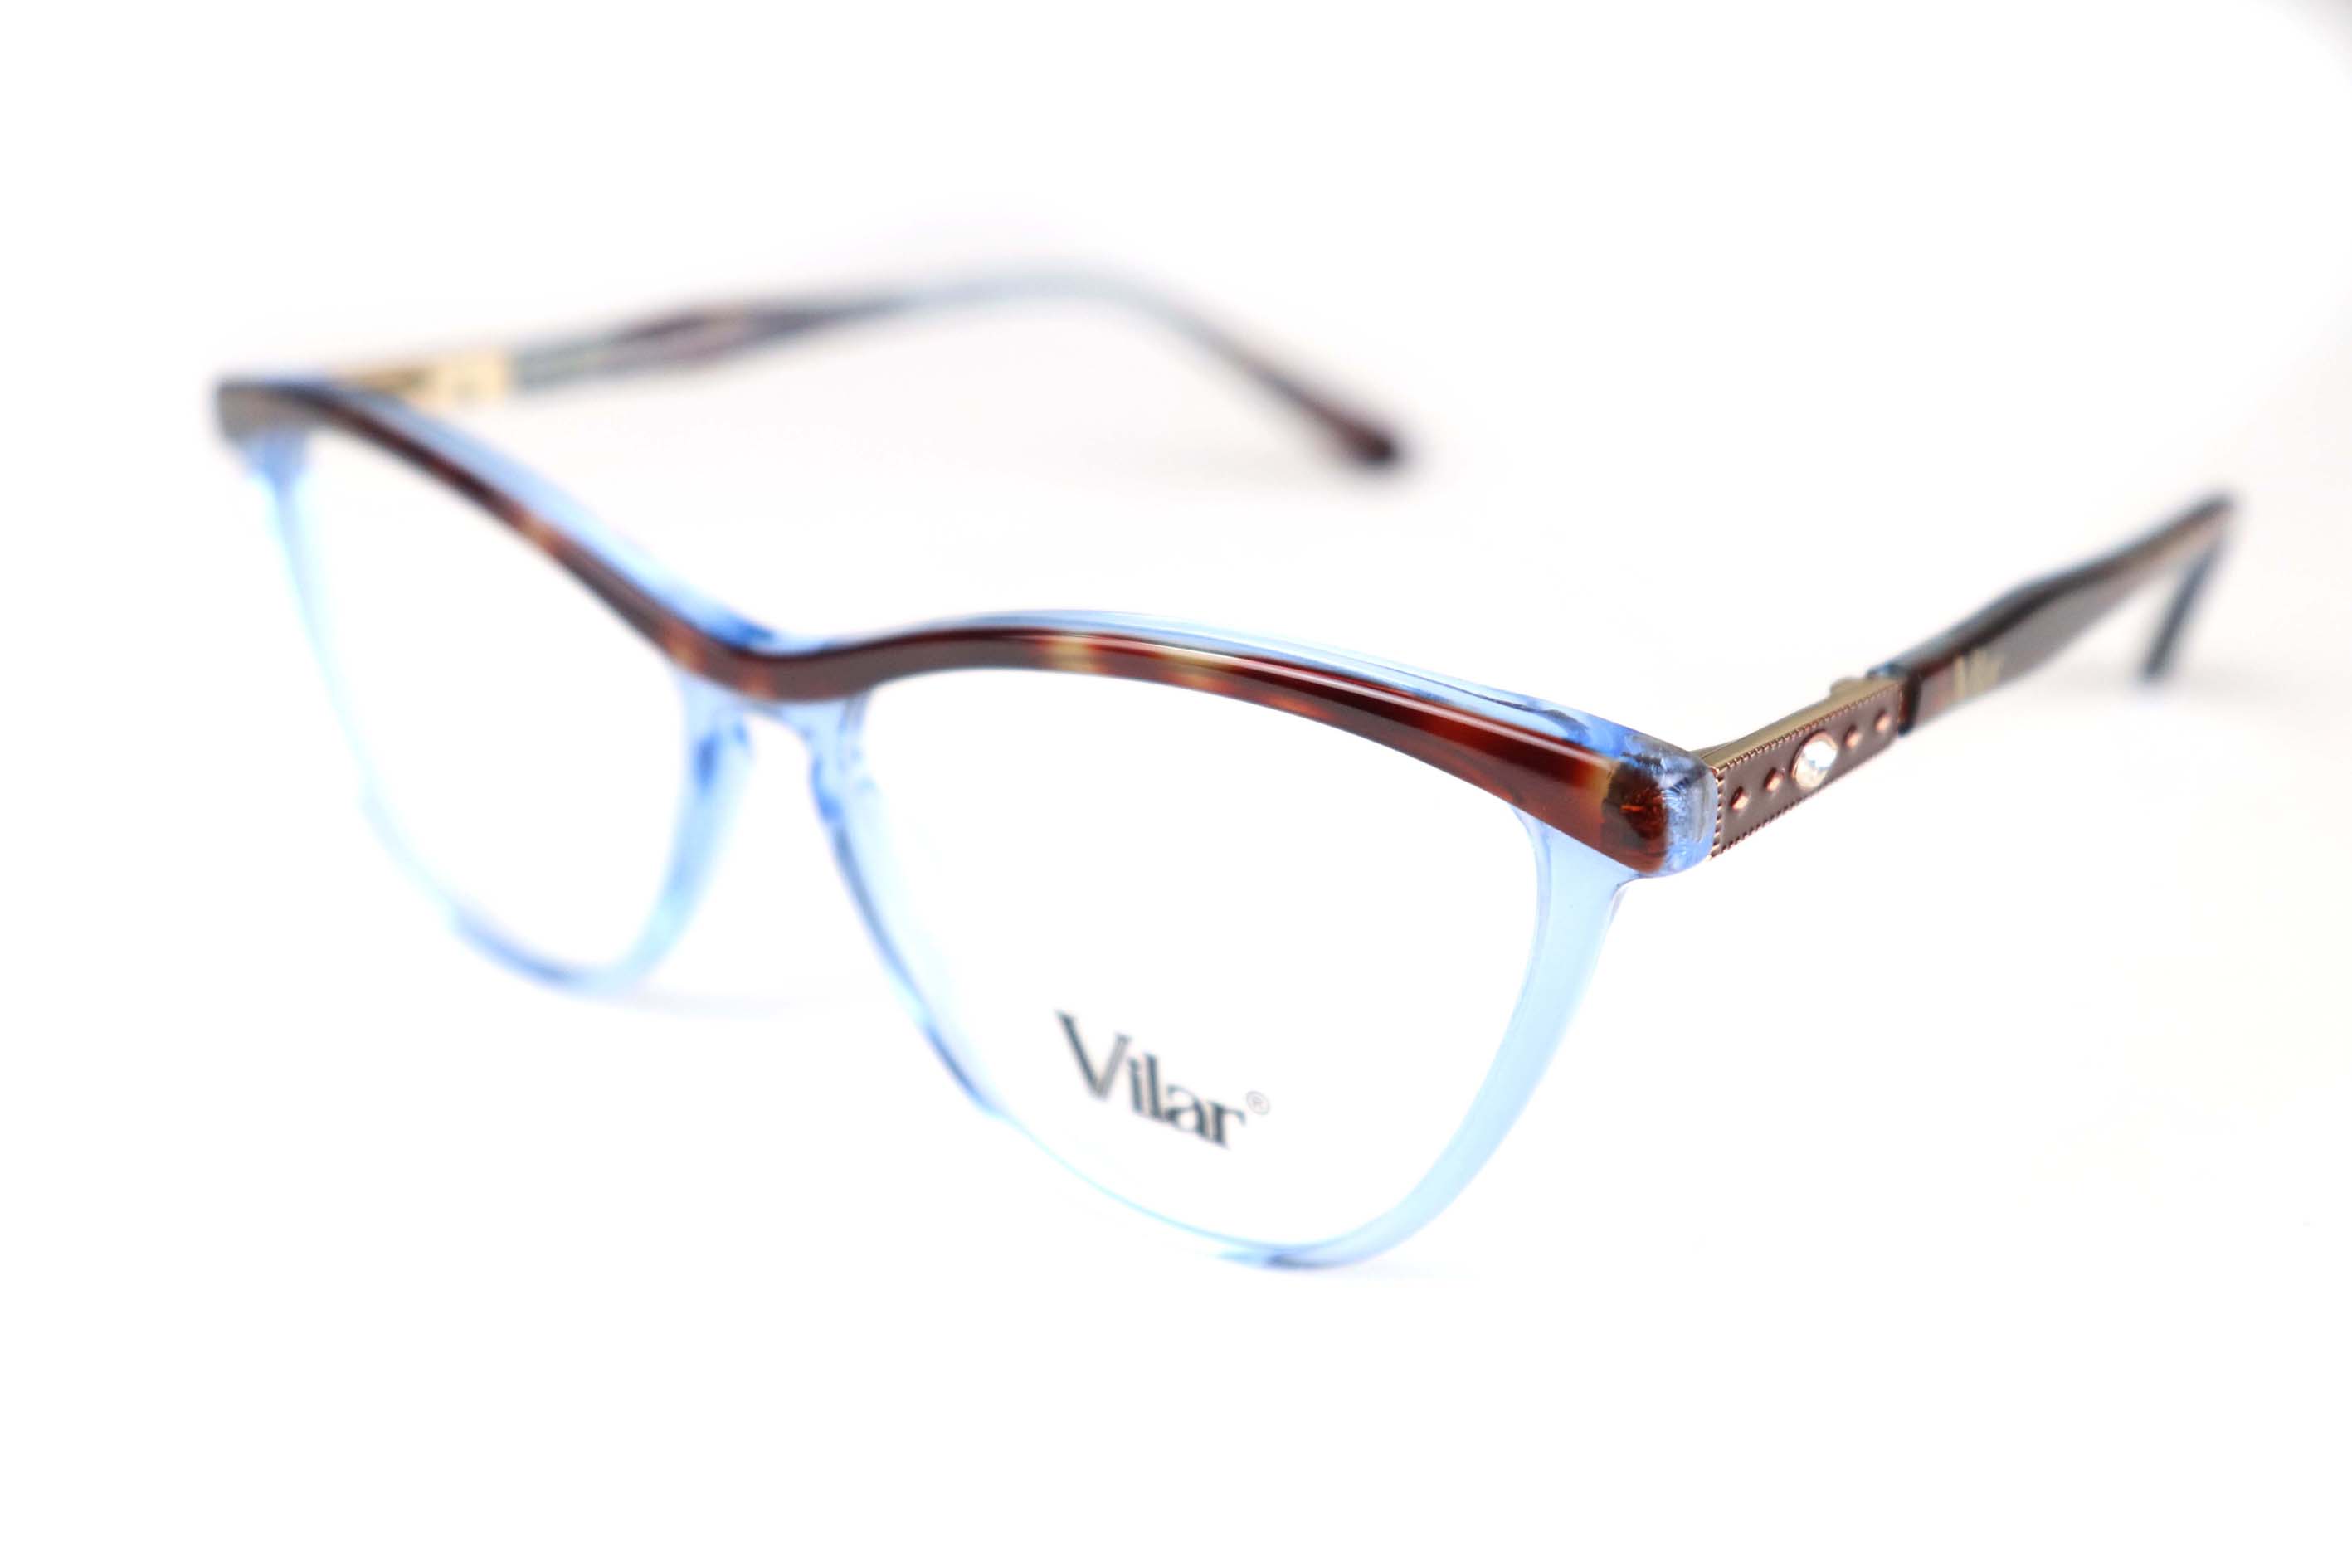 Vilar Eyeglasses -fk0022-c4-50-17-140